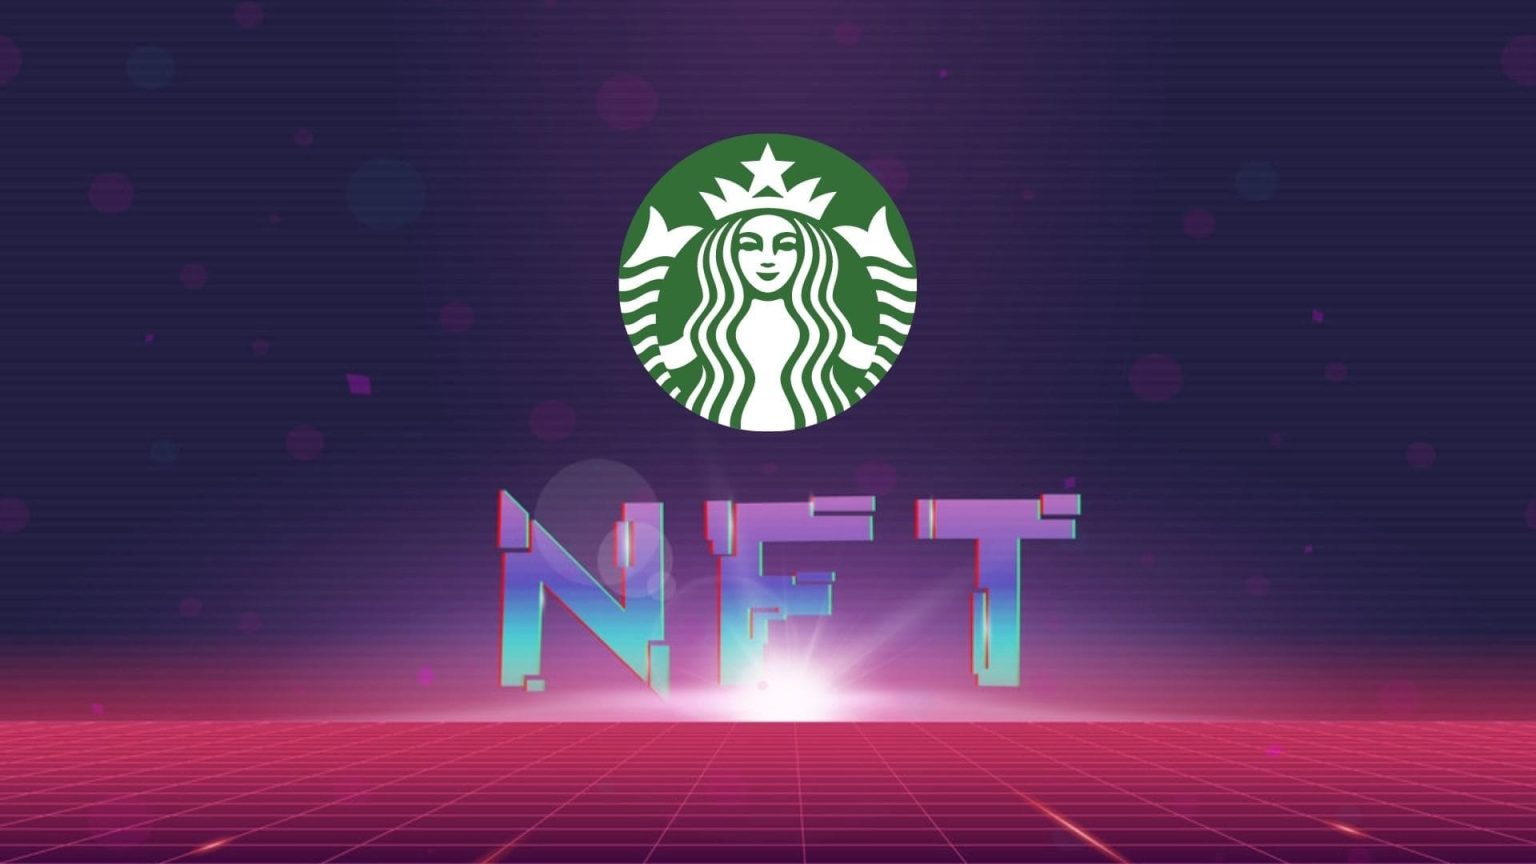 Starbucks-Nike-chuan-bi-NFT-Drop-tren-Polygon-Network-1536x864.jpg